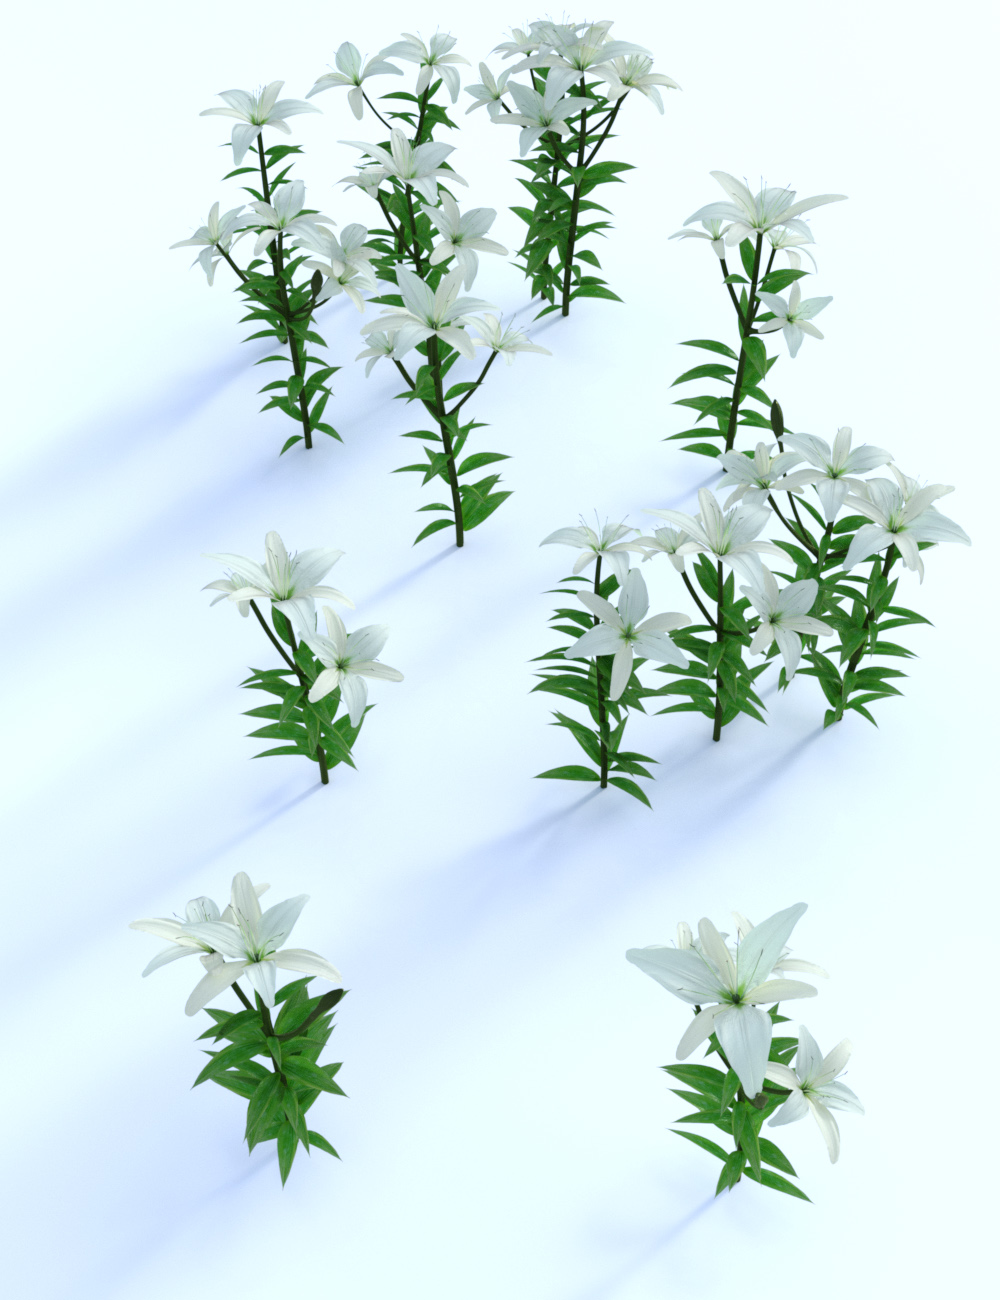 Garden Flowers - Asiatic Lilies by: MartinJFrost, 3D Models by Daz 3D